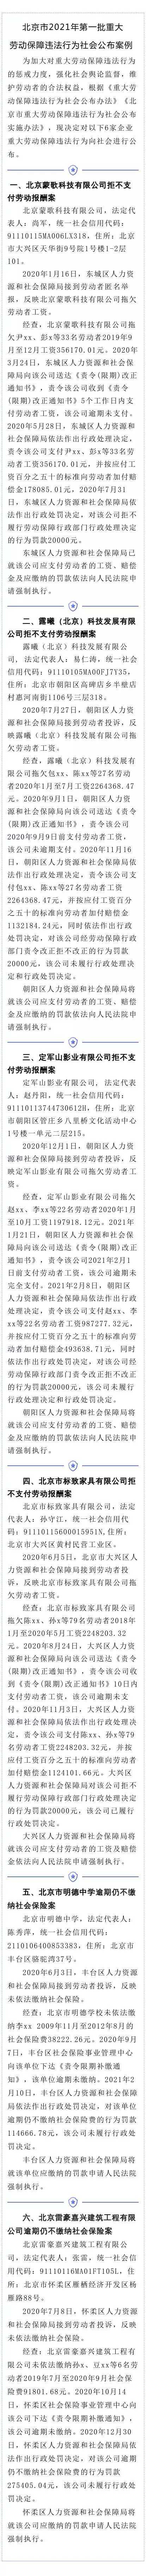 拒不支付劳动报酬、逾期不缴社保 北京市6家企业被曝光